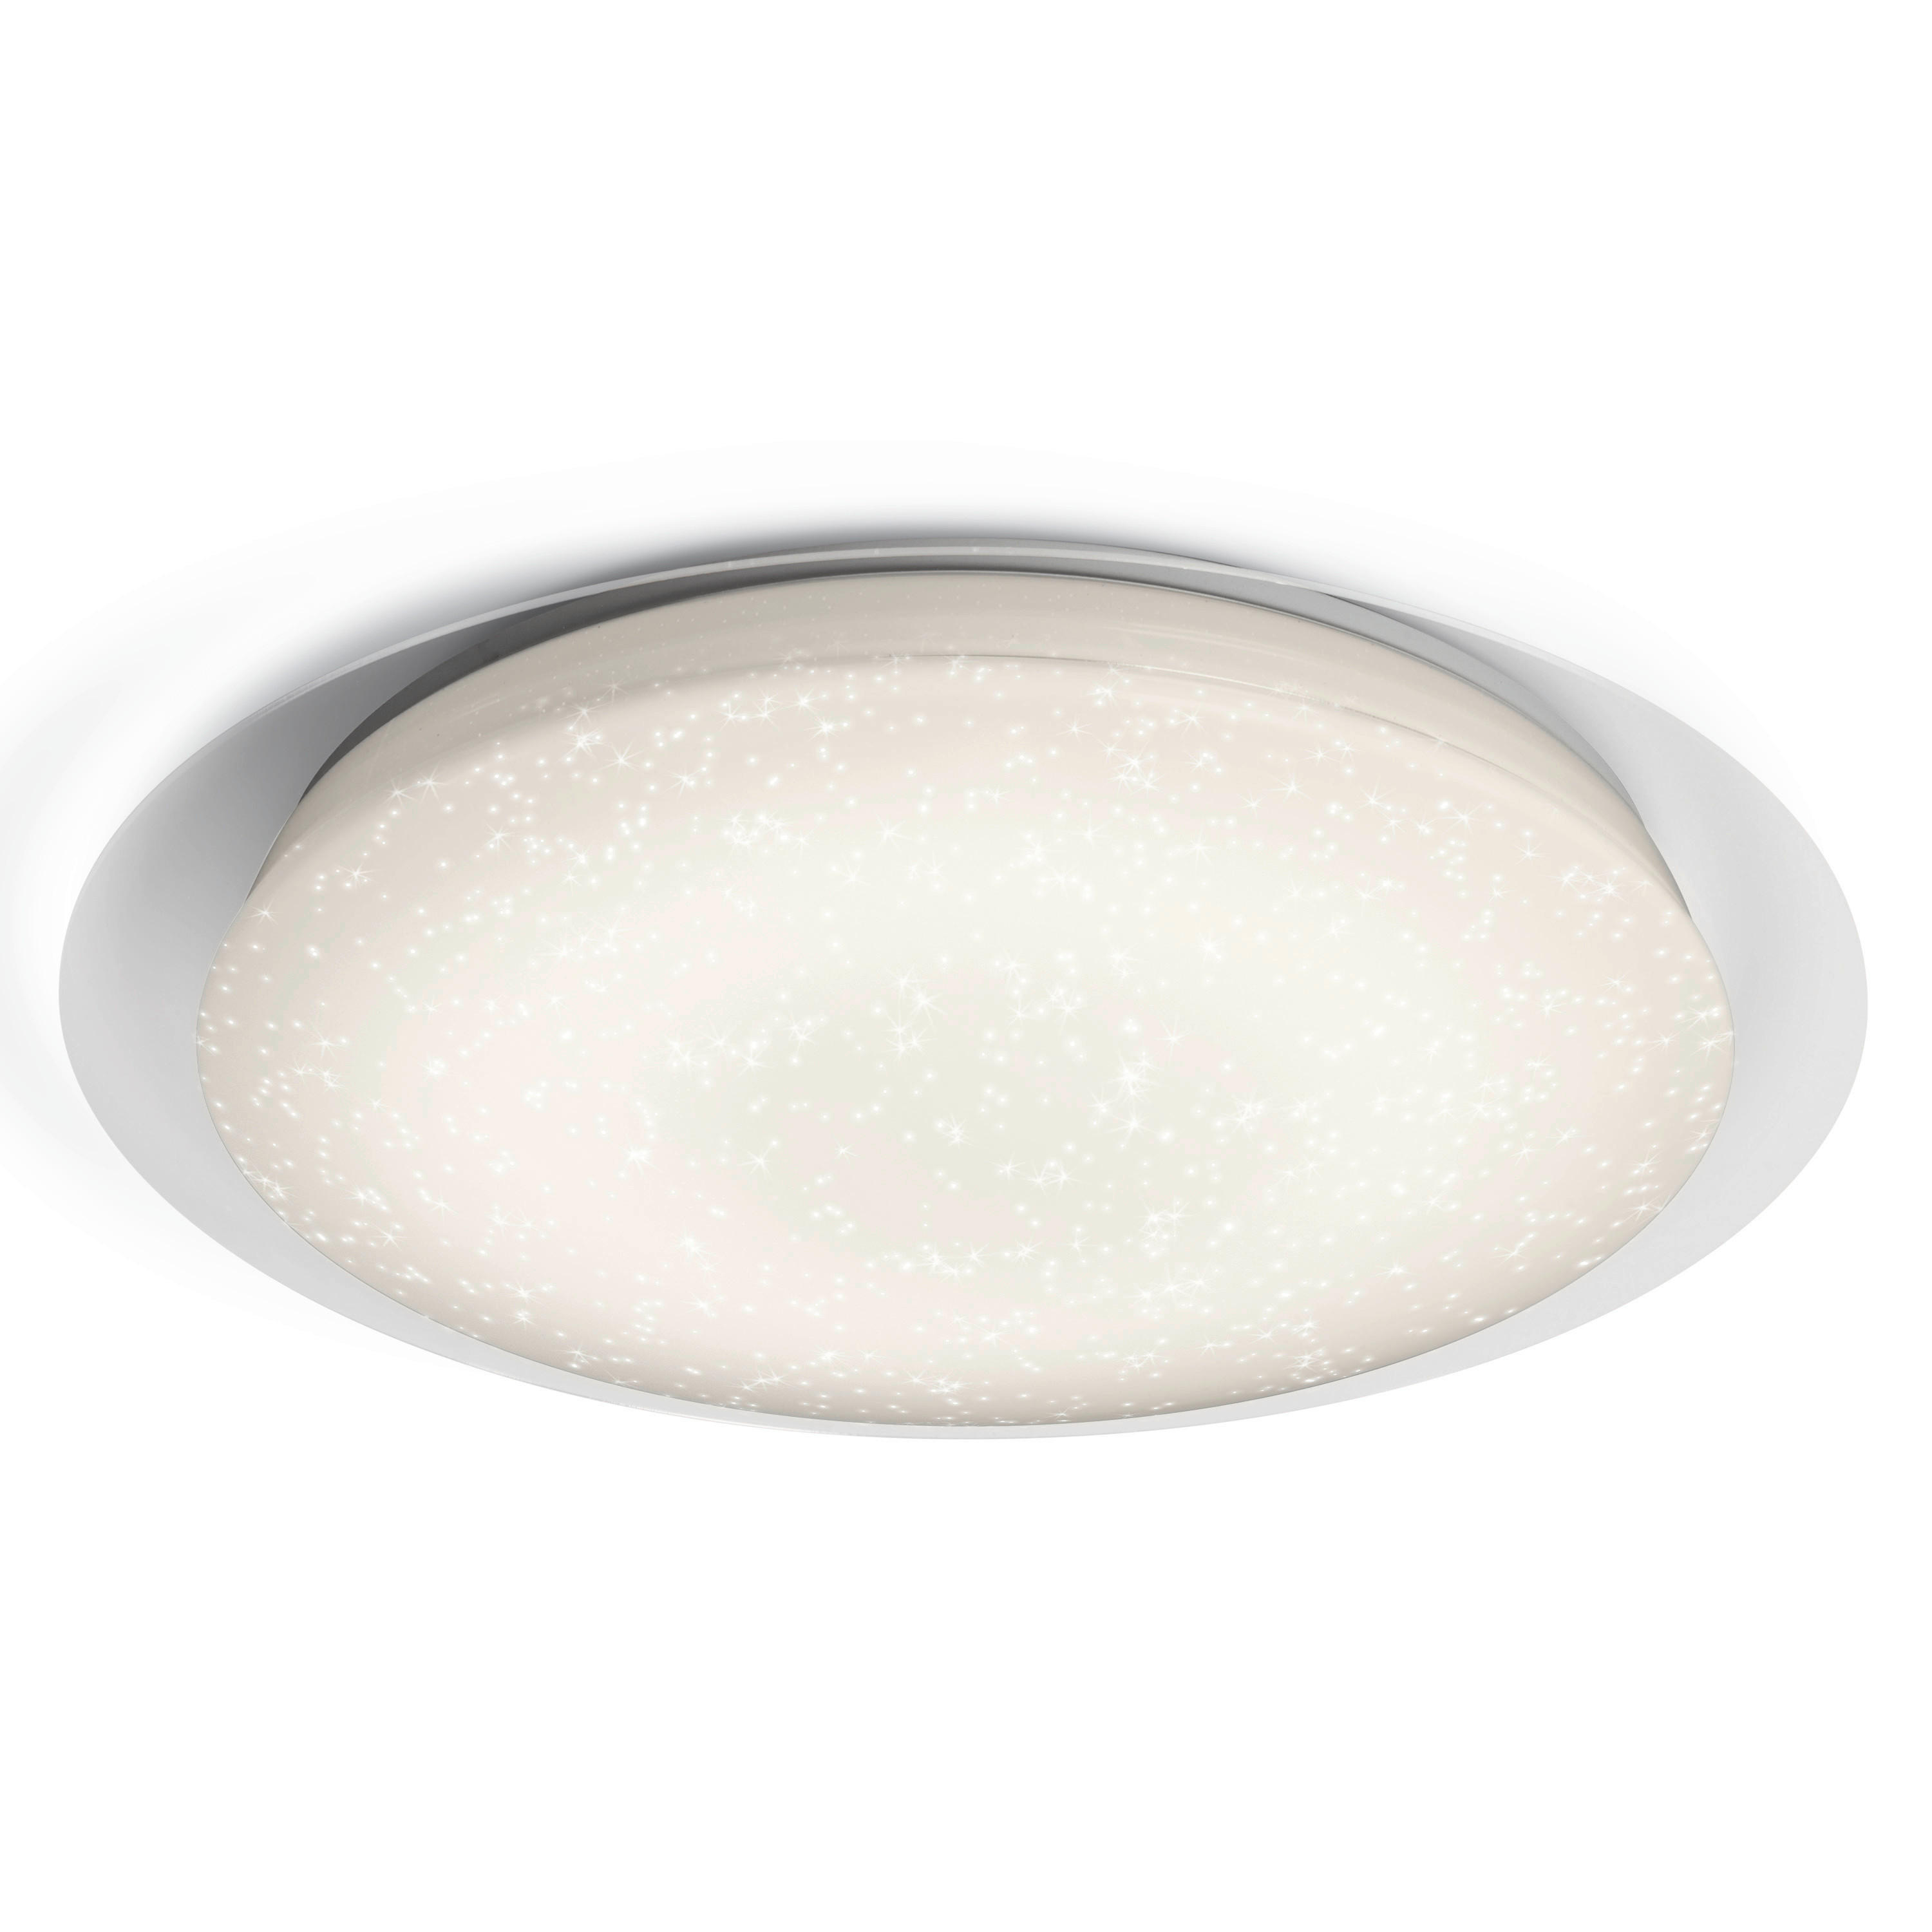 LED-DECKENLEUCHTE Orbis Sparkle  - Weiß, Basics, Kunststoff/Metall (54,6/51,1/52,7cm) - Ledvance